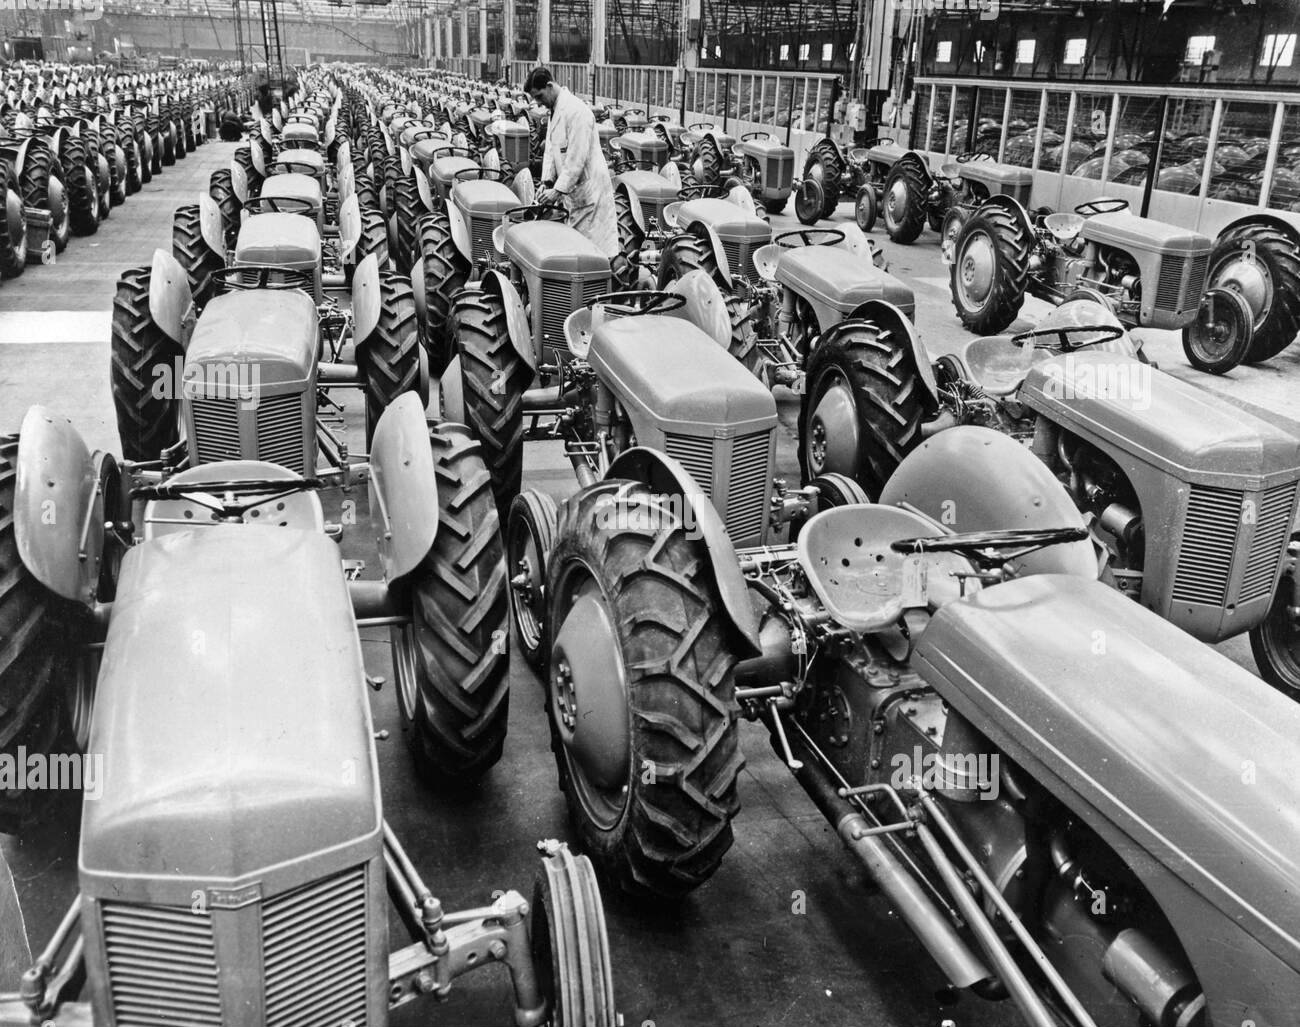 termine-les-tracteurs-ferguson-pic-montre-le-remplissage-des-baies-situees-a-l-usine-de-banner-lane-de-moteurs-standard-1951-a-partir-des-archives-de-communiques-de-presse-anciennement-service-portrait-portrait.jpg